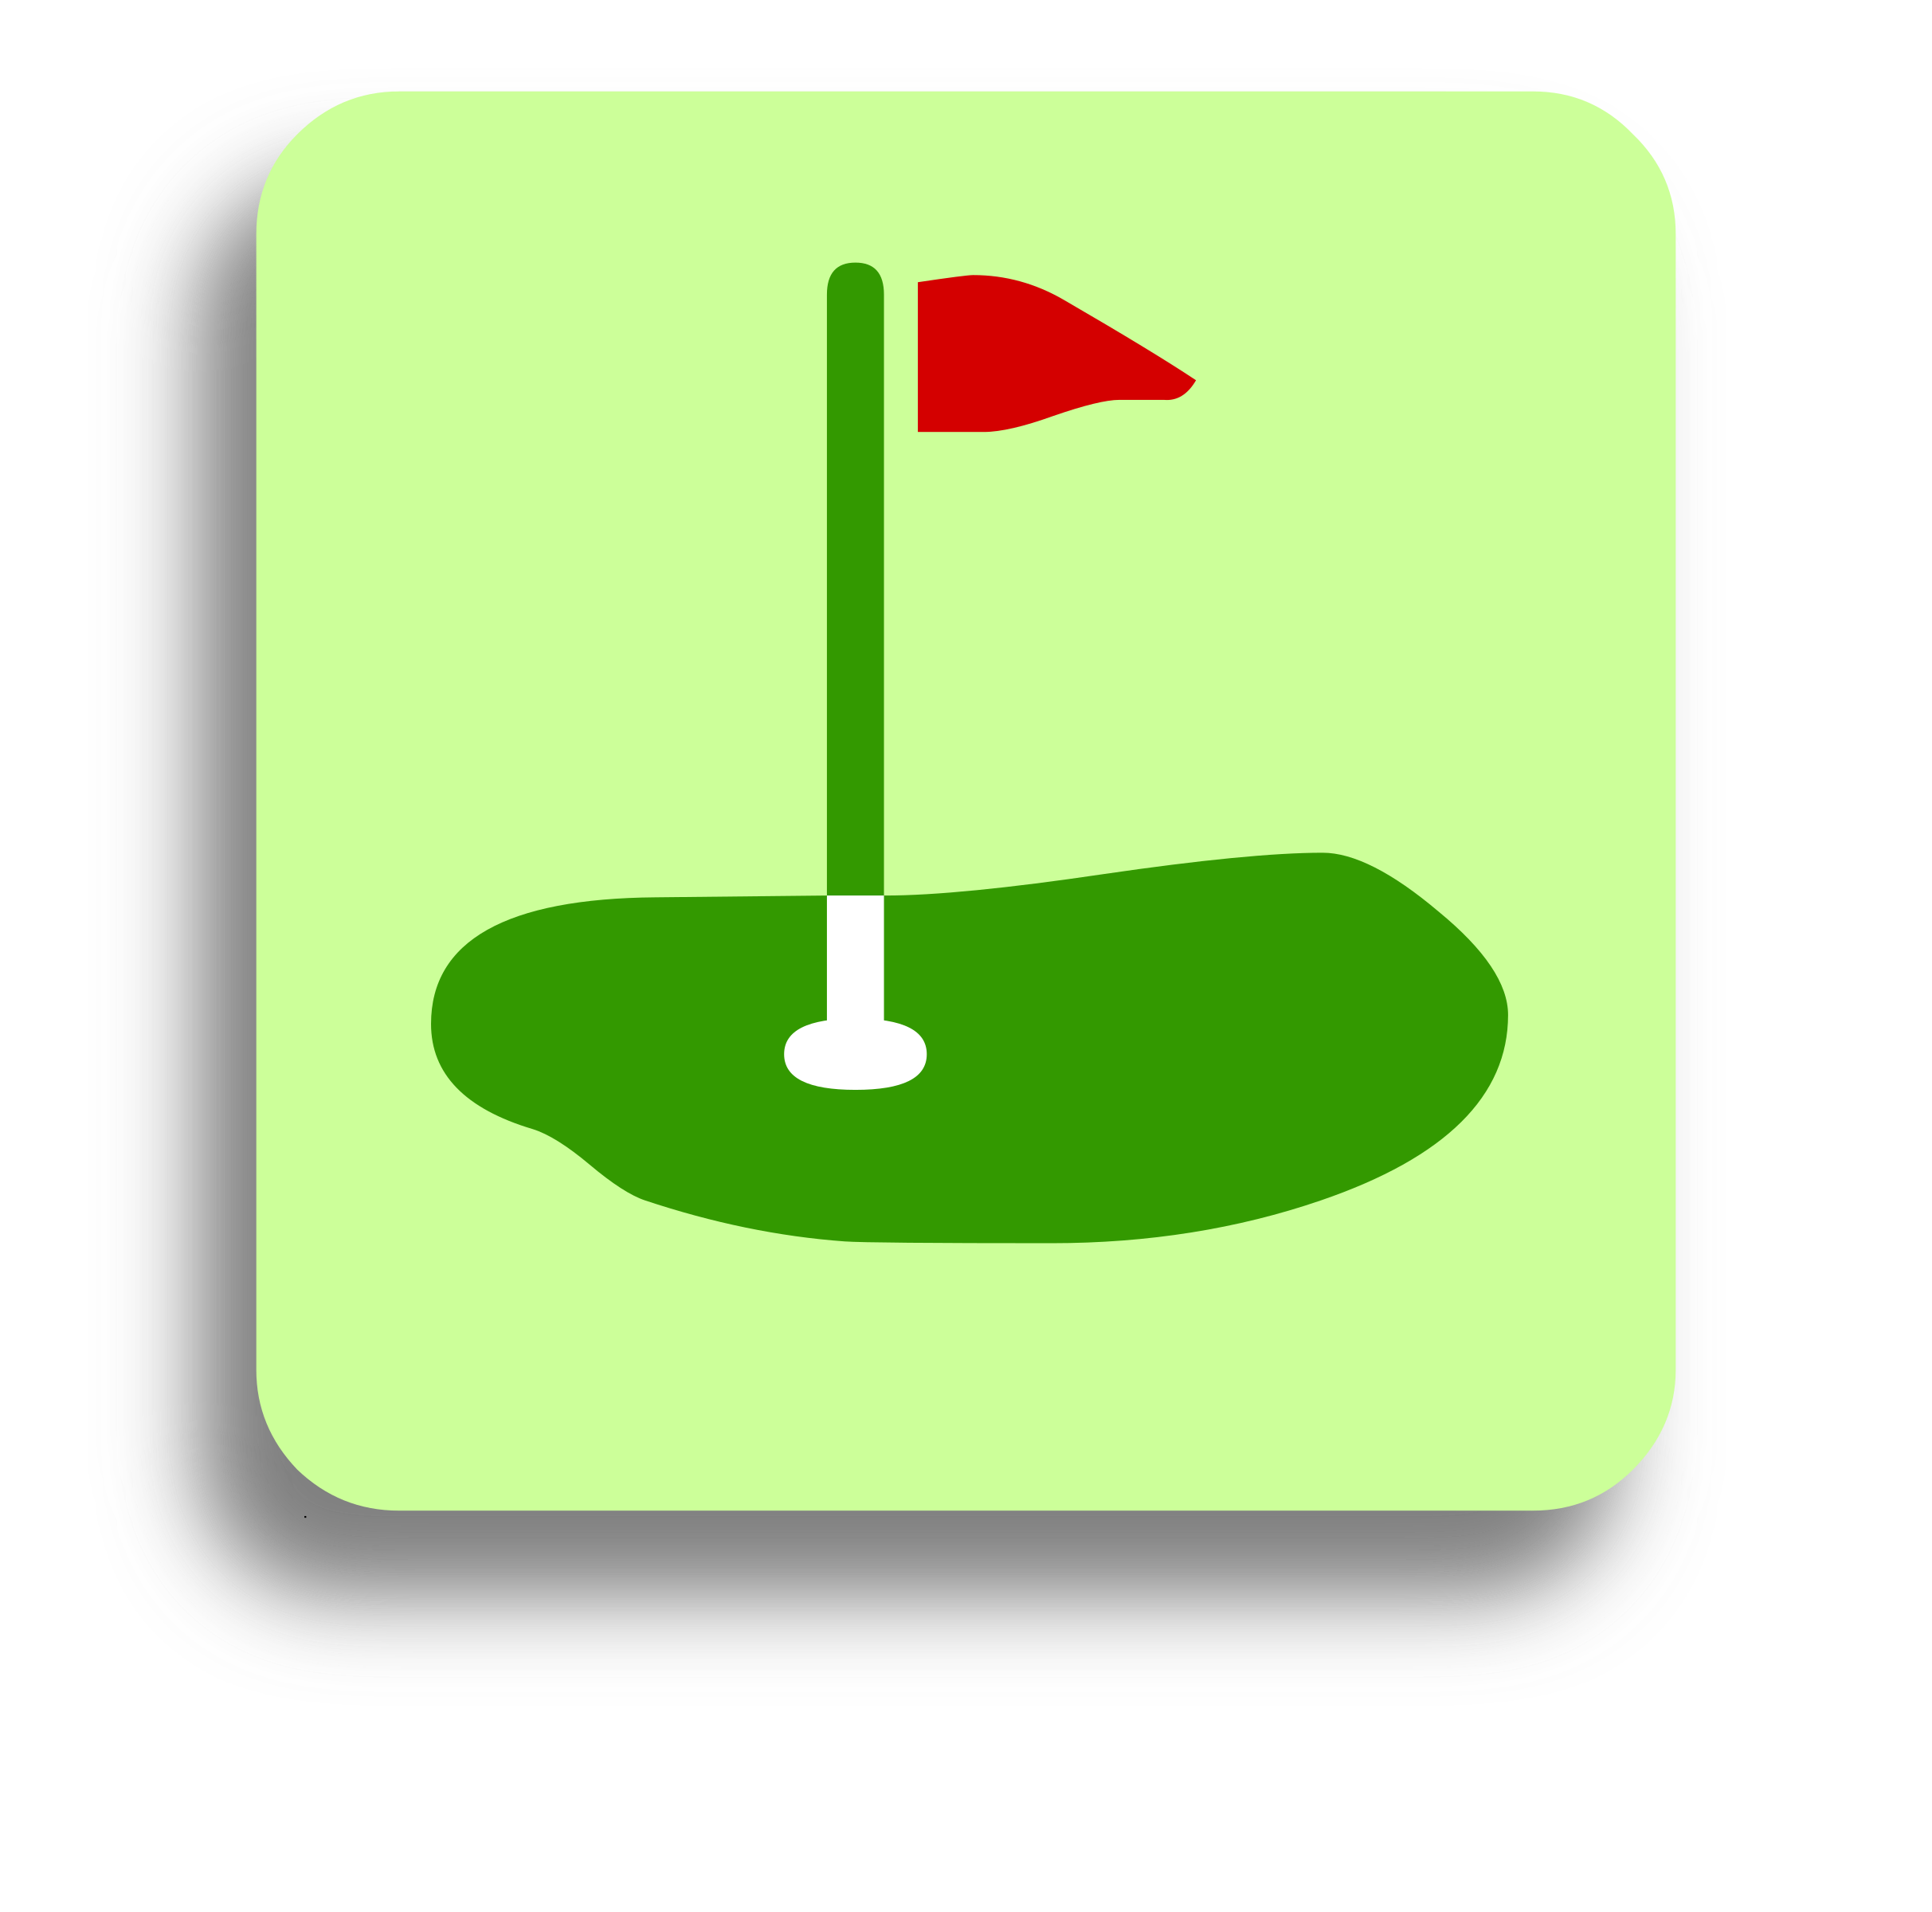 hole clipart golf